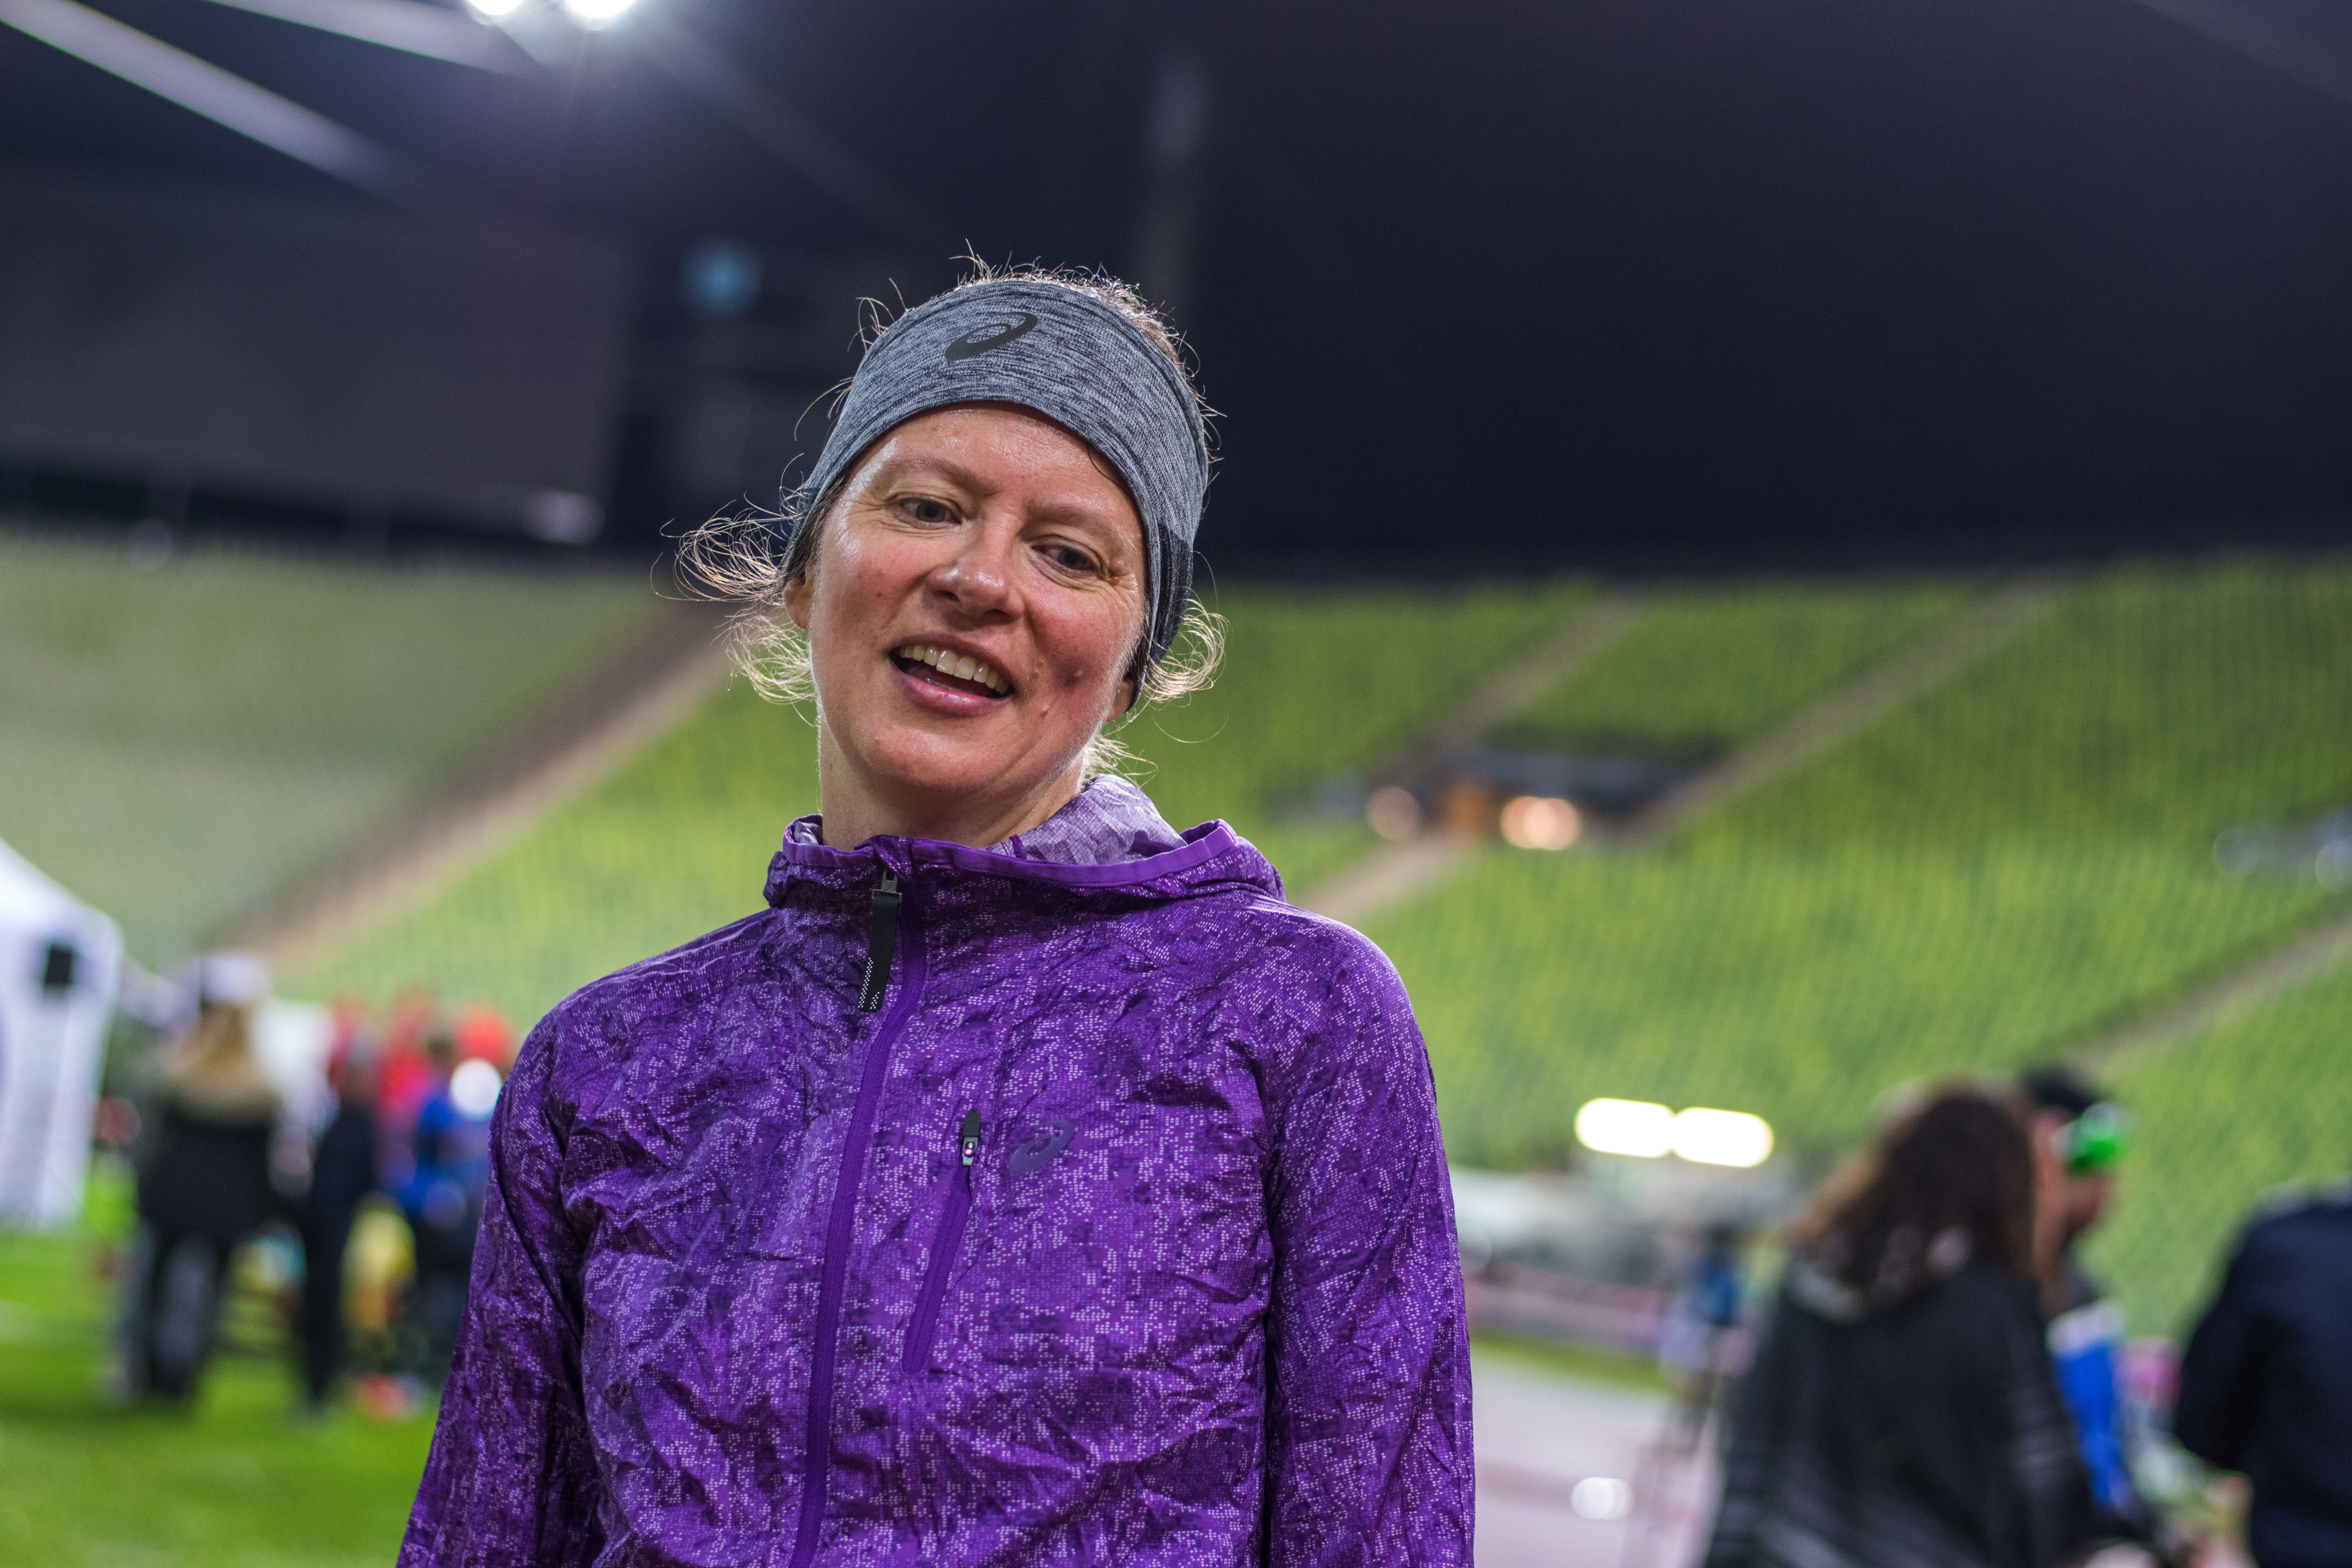 8-Stunden-Lauf in München: Stolz auf meine Leistung, enttäuscht von der Veranstaltung